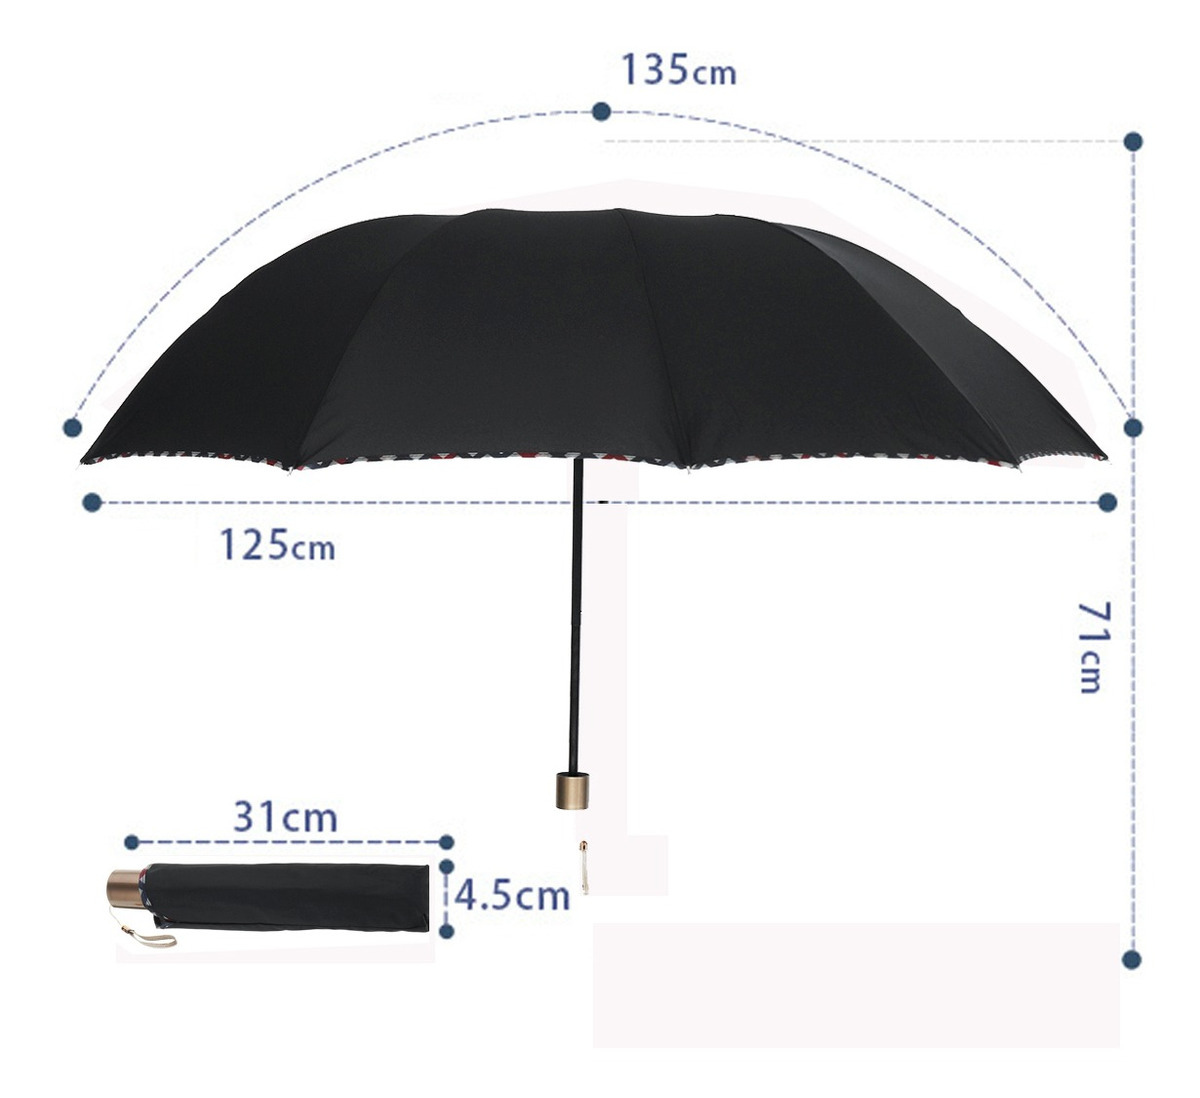 Составляющие зонтика